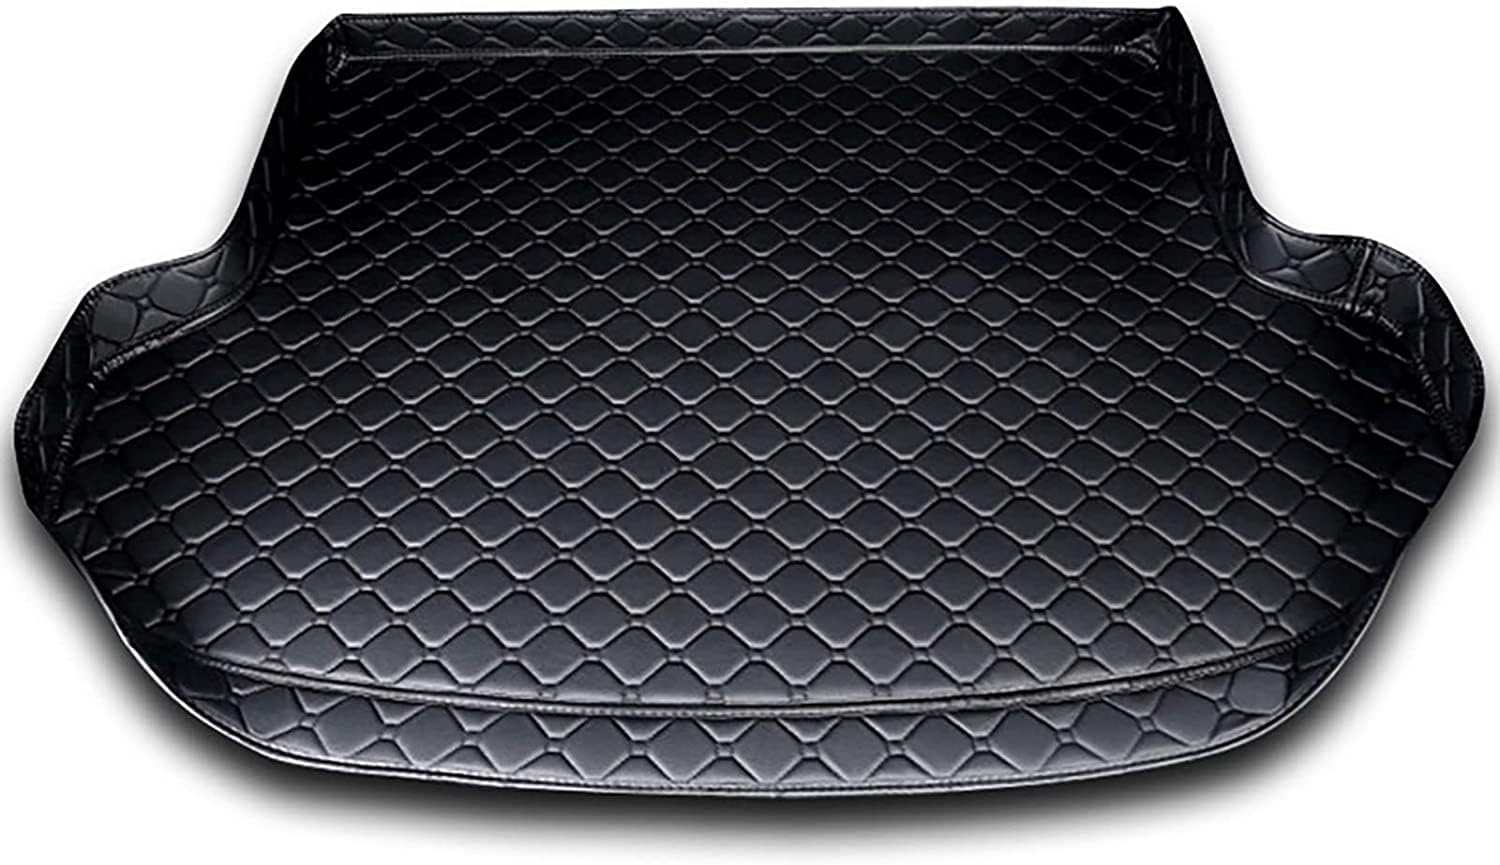 Auto Leder Kofferraummatten für Hyundai i30 Kombi 2019- Kofferraum Schutzmatte Kofferraumwanne Teppich rutschfest Staubdicht ZubehöR.,A-Black von UNGOOR